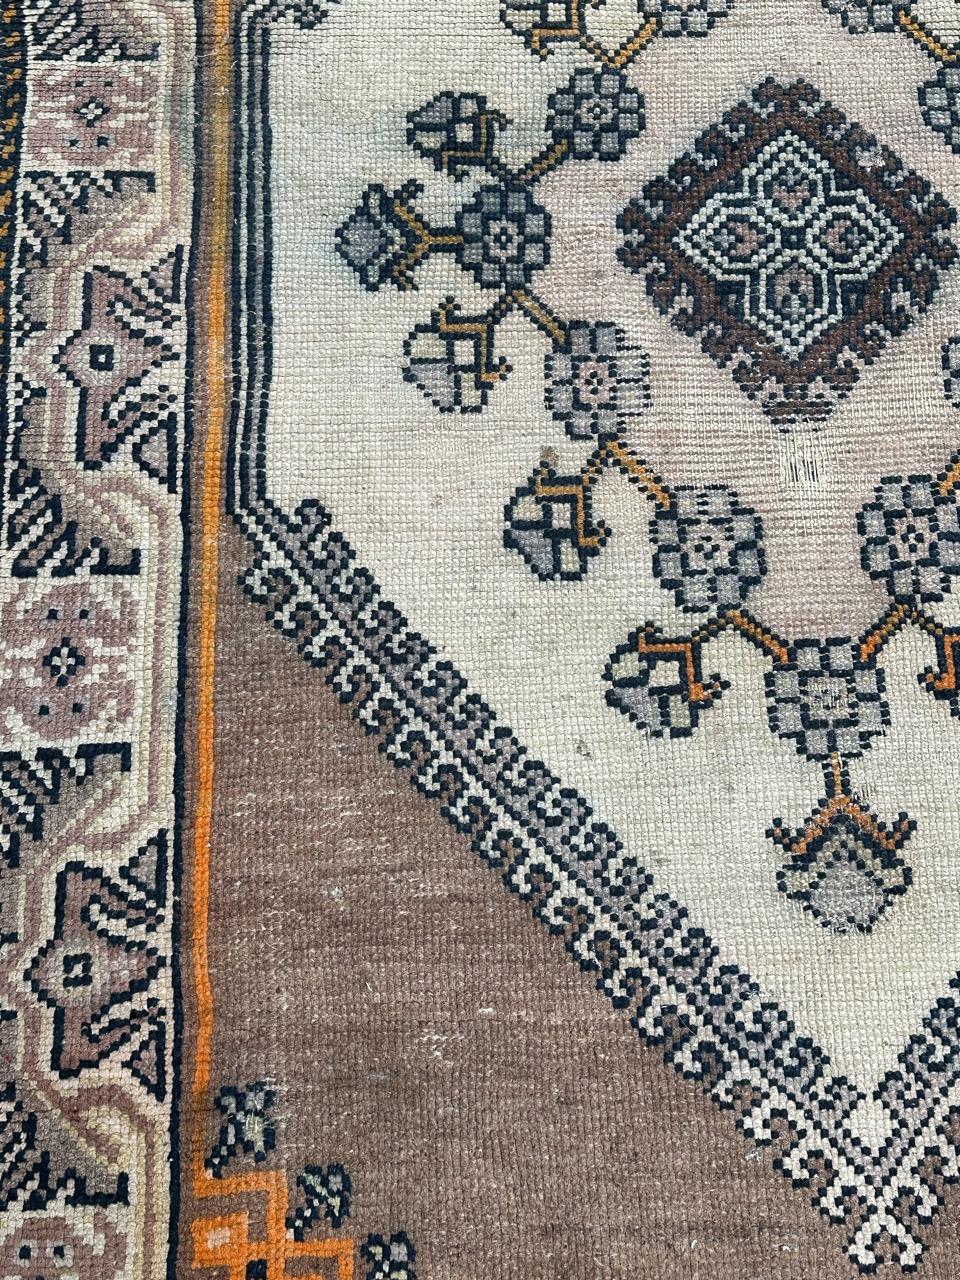 Hübscher tunesischer Teppich aus der Mitte des Jahrhunderts mit geometrischem und Stammesmuster und schönen Farben in Weiß, Orange, Rosa, Lila, Braun und Schwarz, komplett handgeknüpft mit Wolle auf Baumwollfond 

✨✨✨
